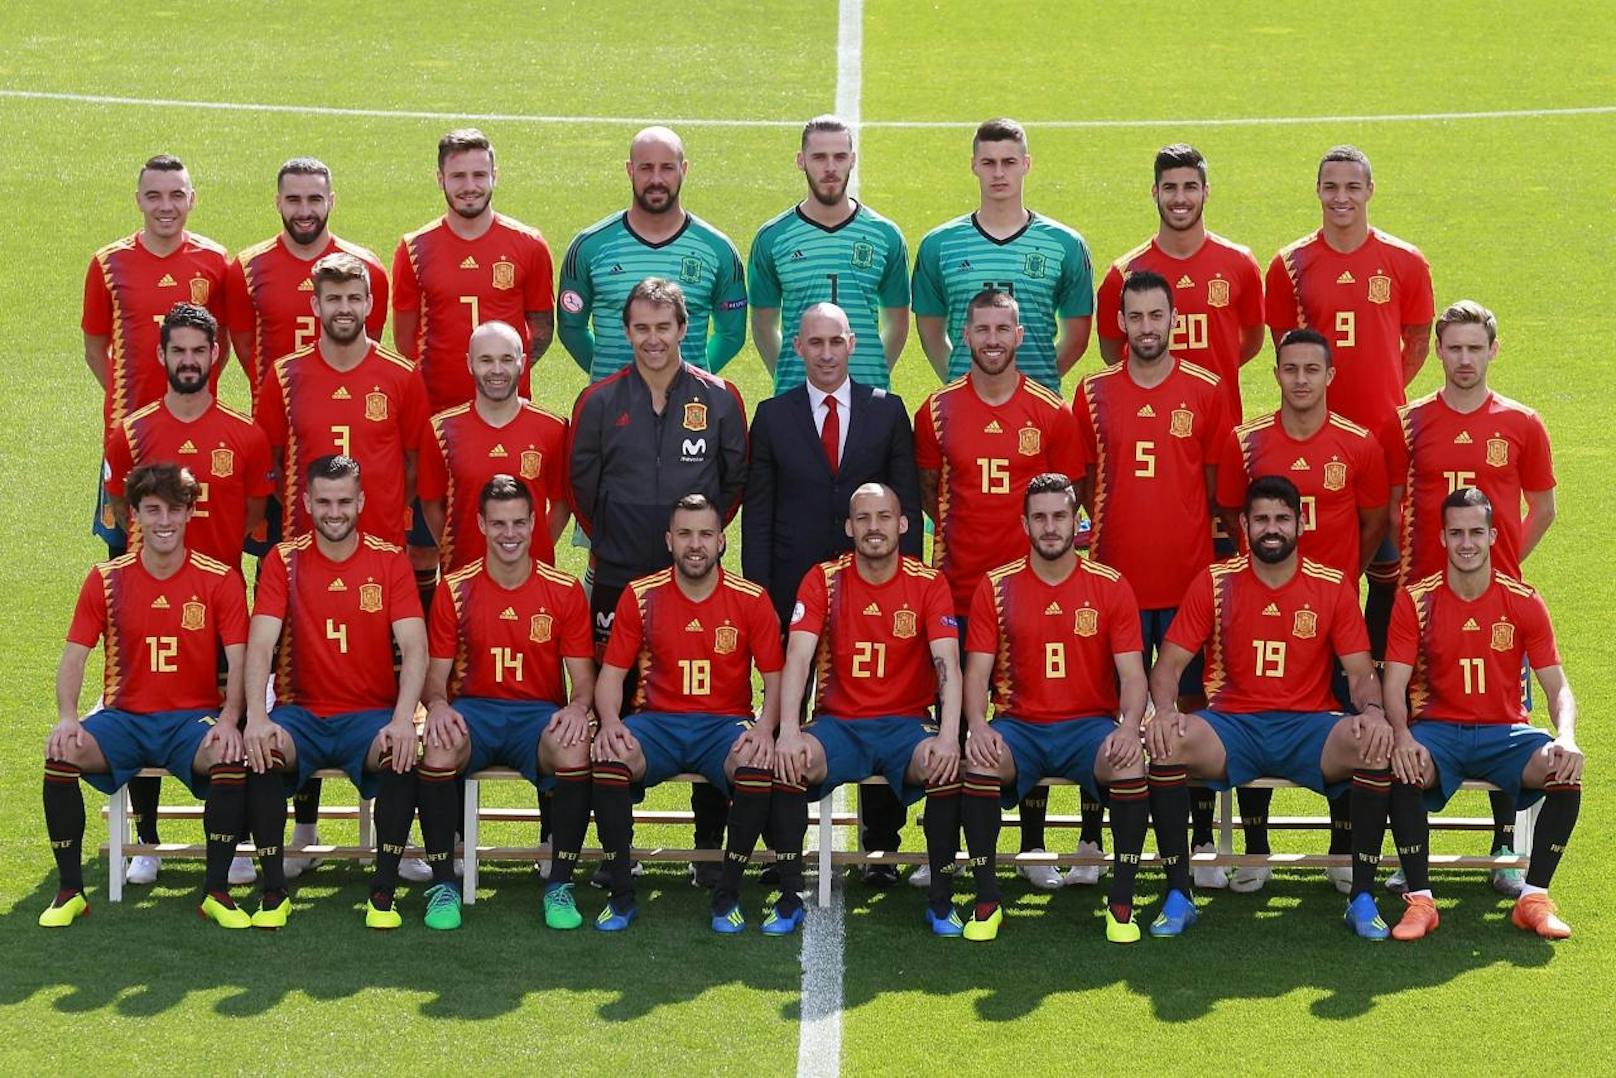 Spanien gilt als Mitfavorit auf den Titel - auch wenn am Tag vor dem WM-Start der Trainer ausgetauscht wurde. Diese Spieler sollen es in Russland richten.